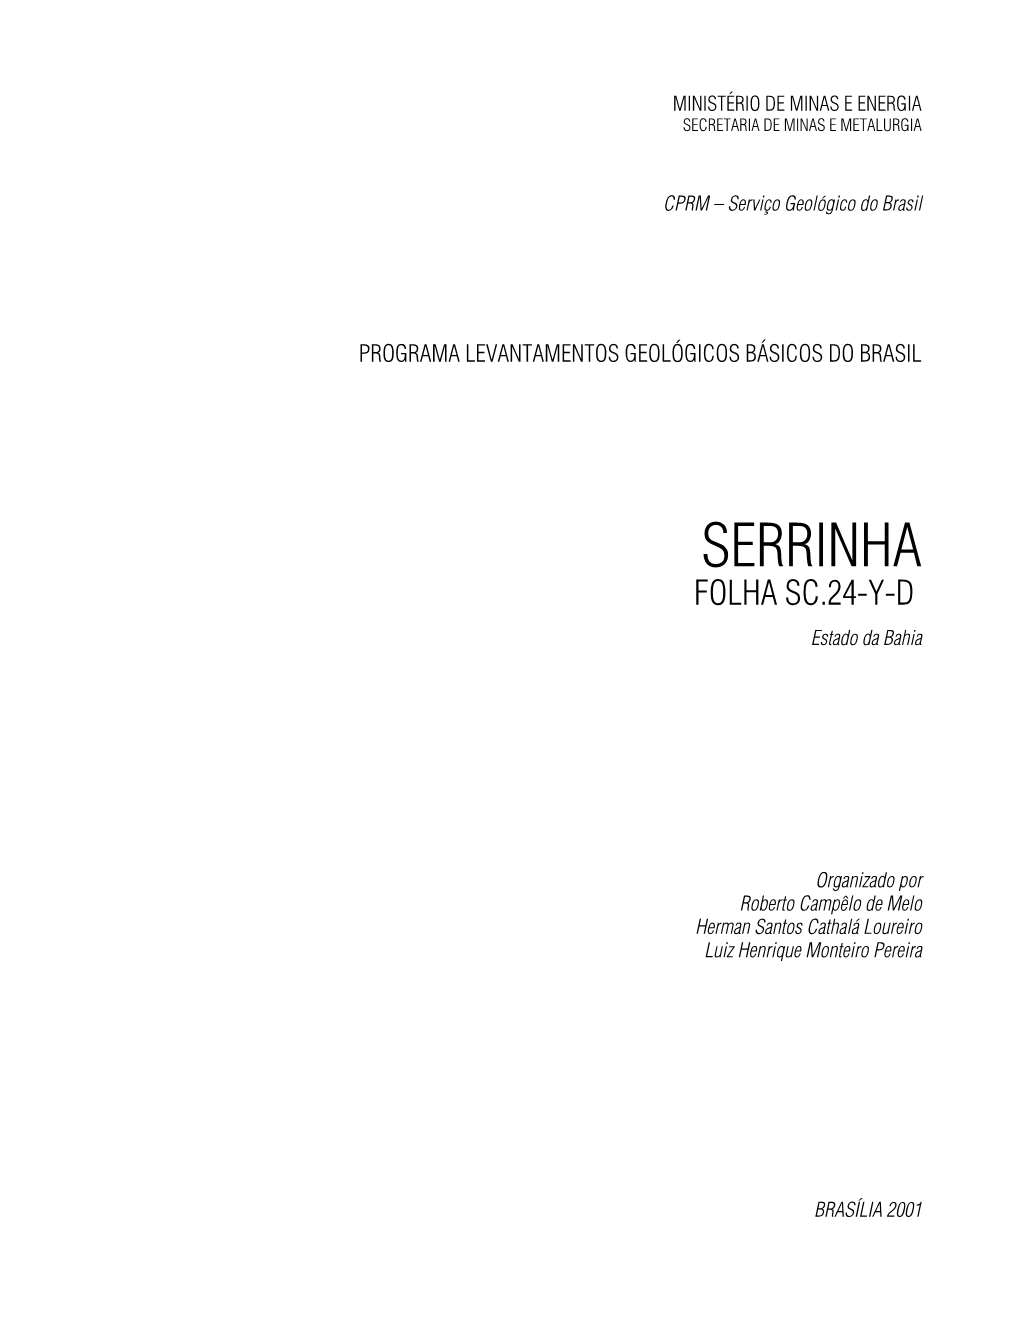 Serrinha Folha Sc.24-Y-D